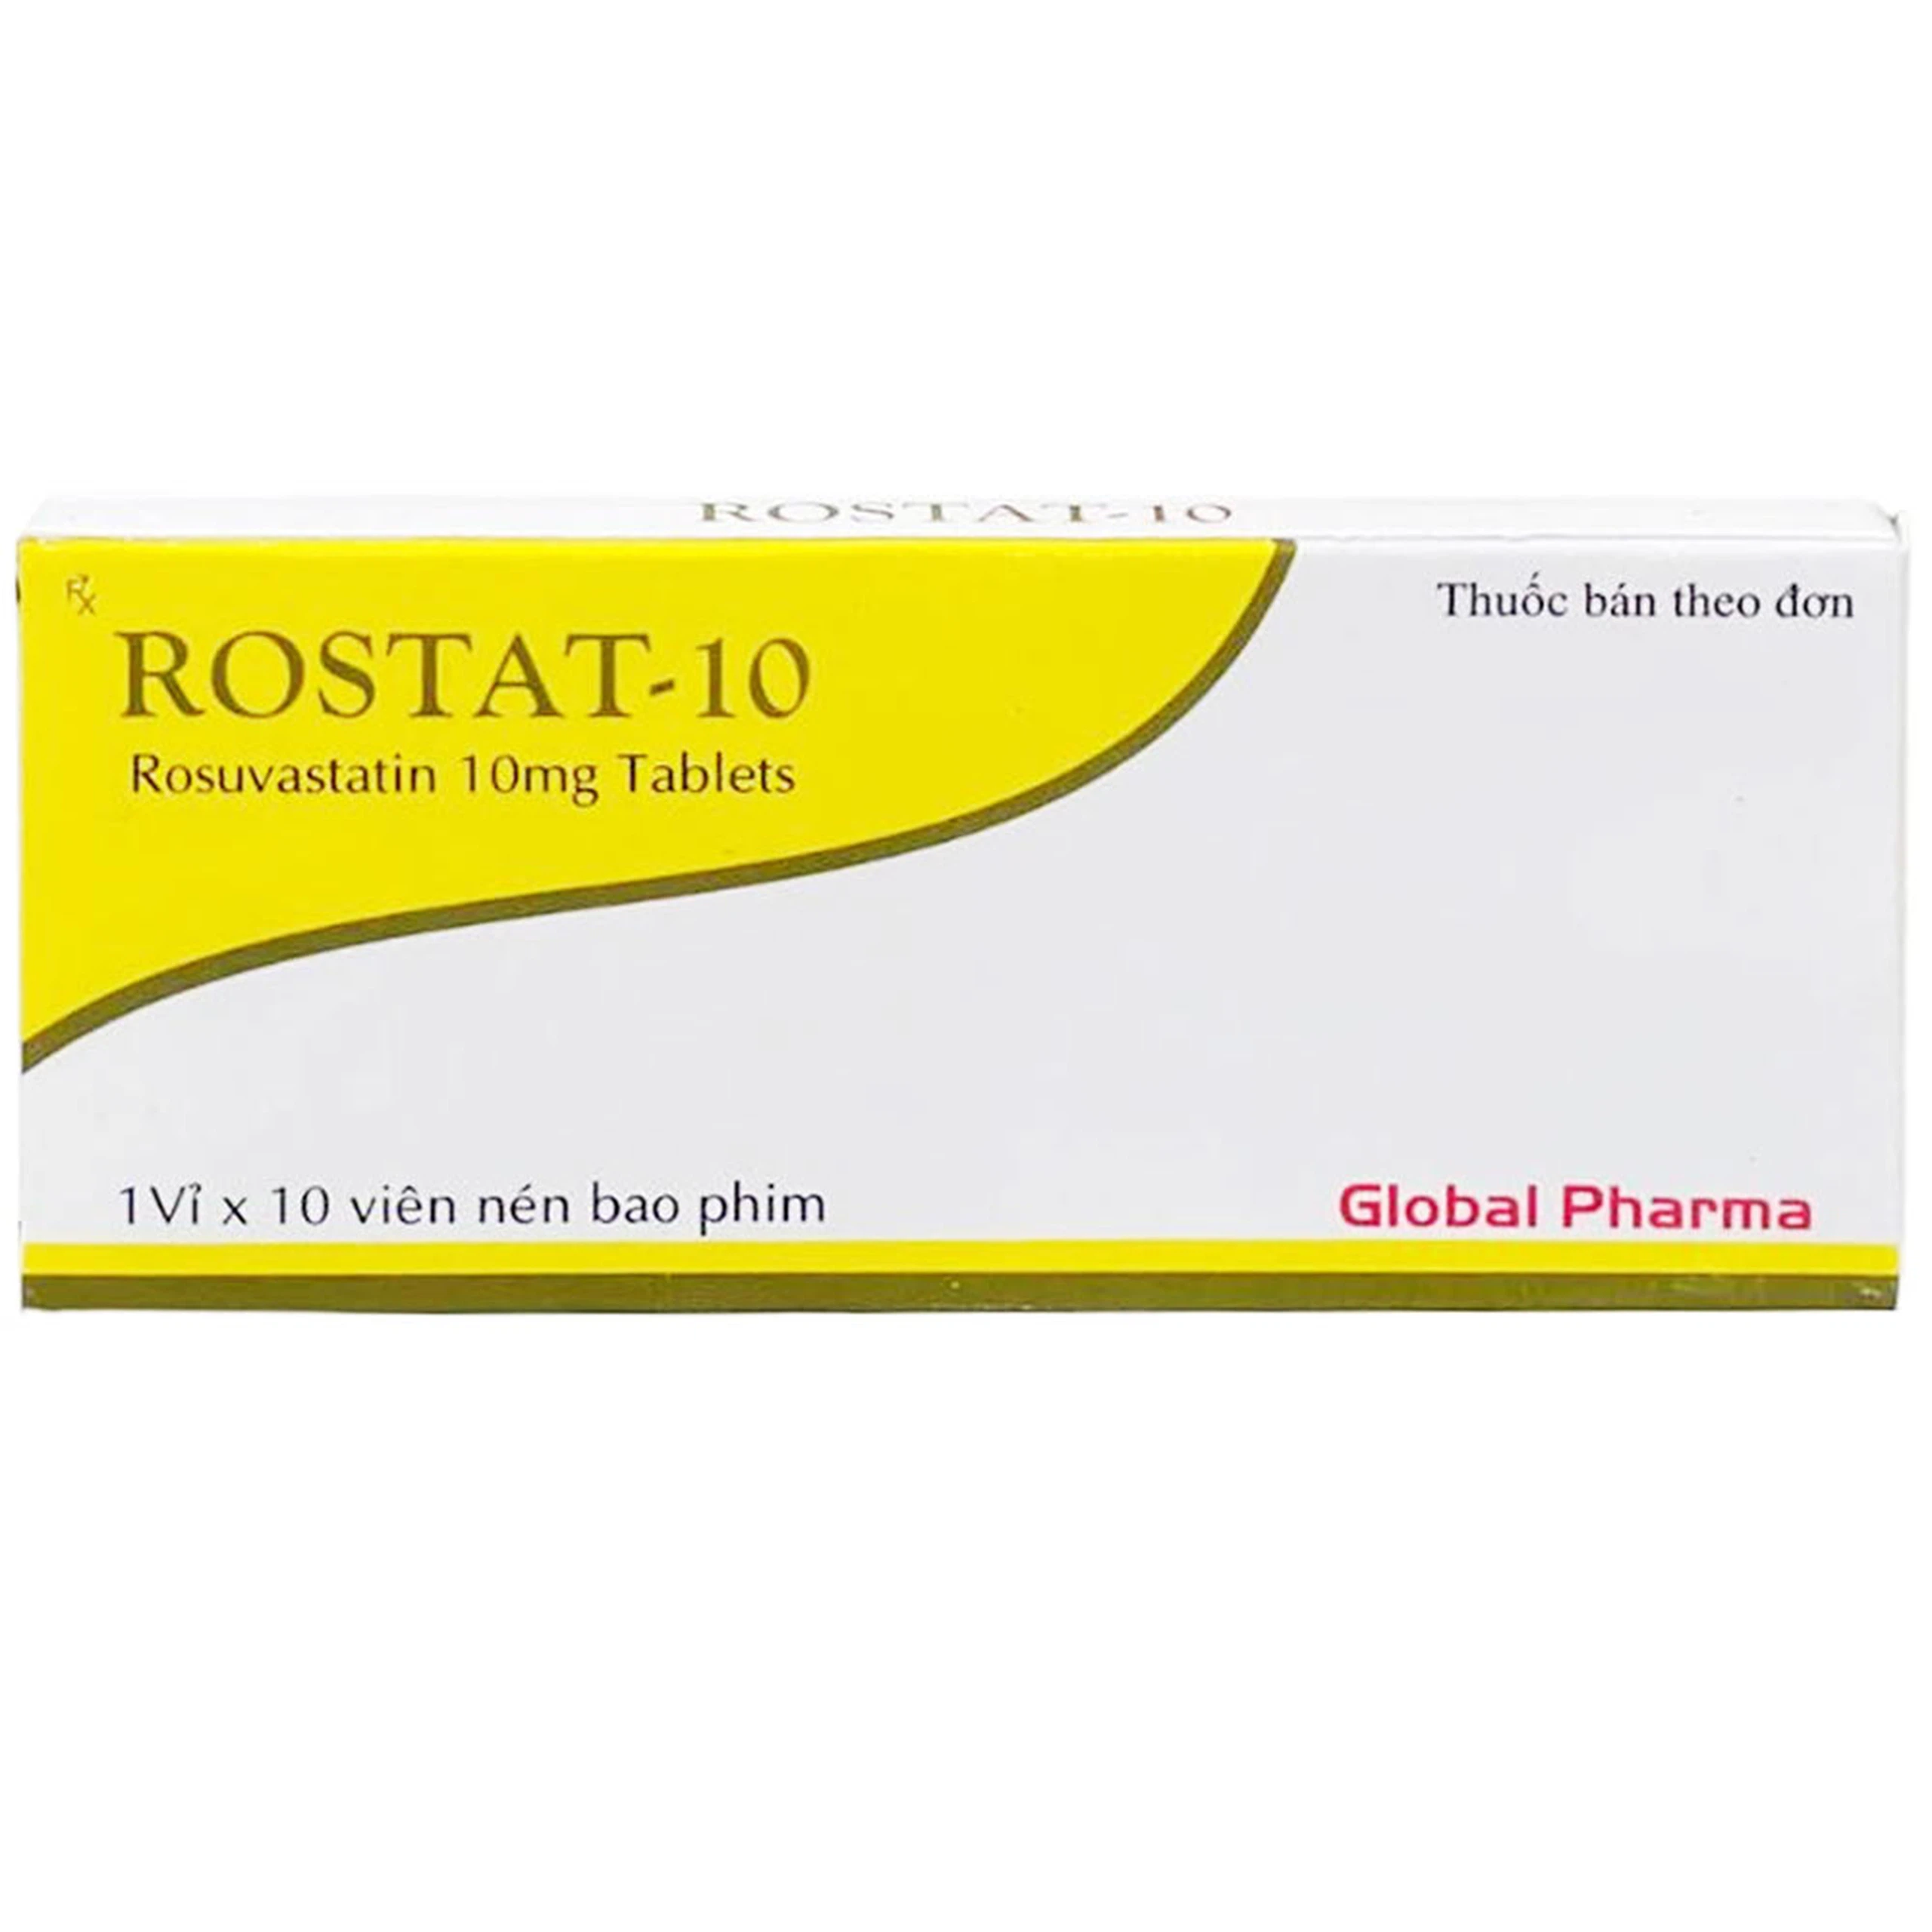 Thuốc Rostat-10 Global Pharma điều trị tăng cholesterol máu và phòng ngừa biến chứng tim mạch (1 vỉ x 10 viên)